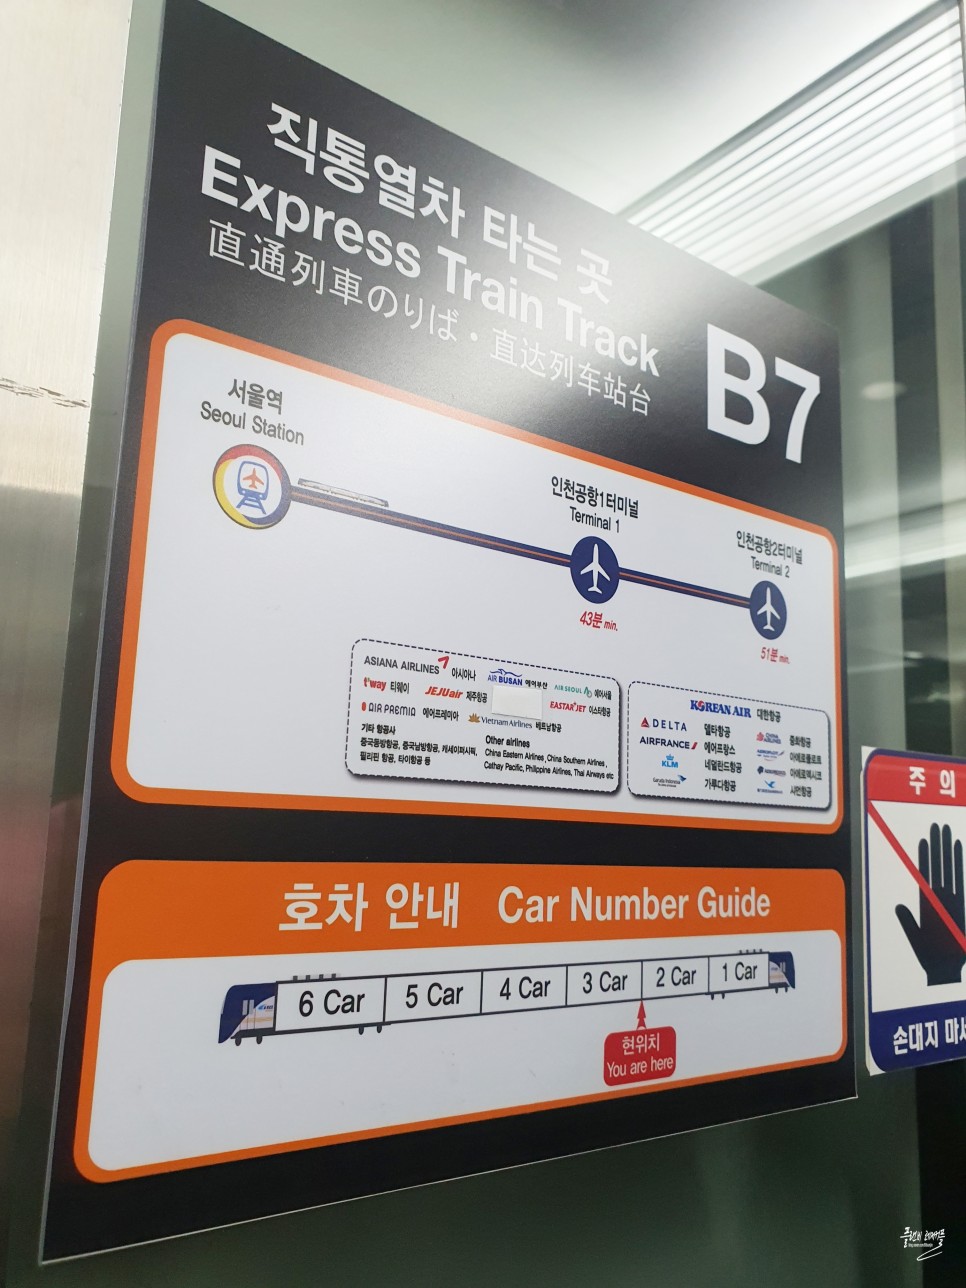 인천공항철도 직통열차 AREX 서울역 시간표 탑승후기